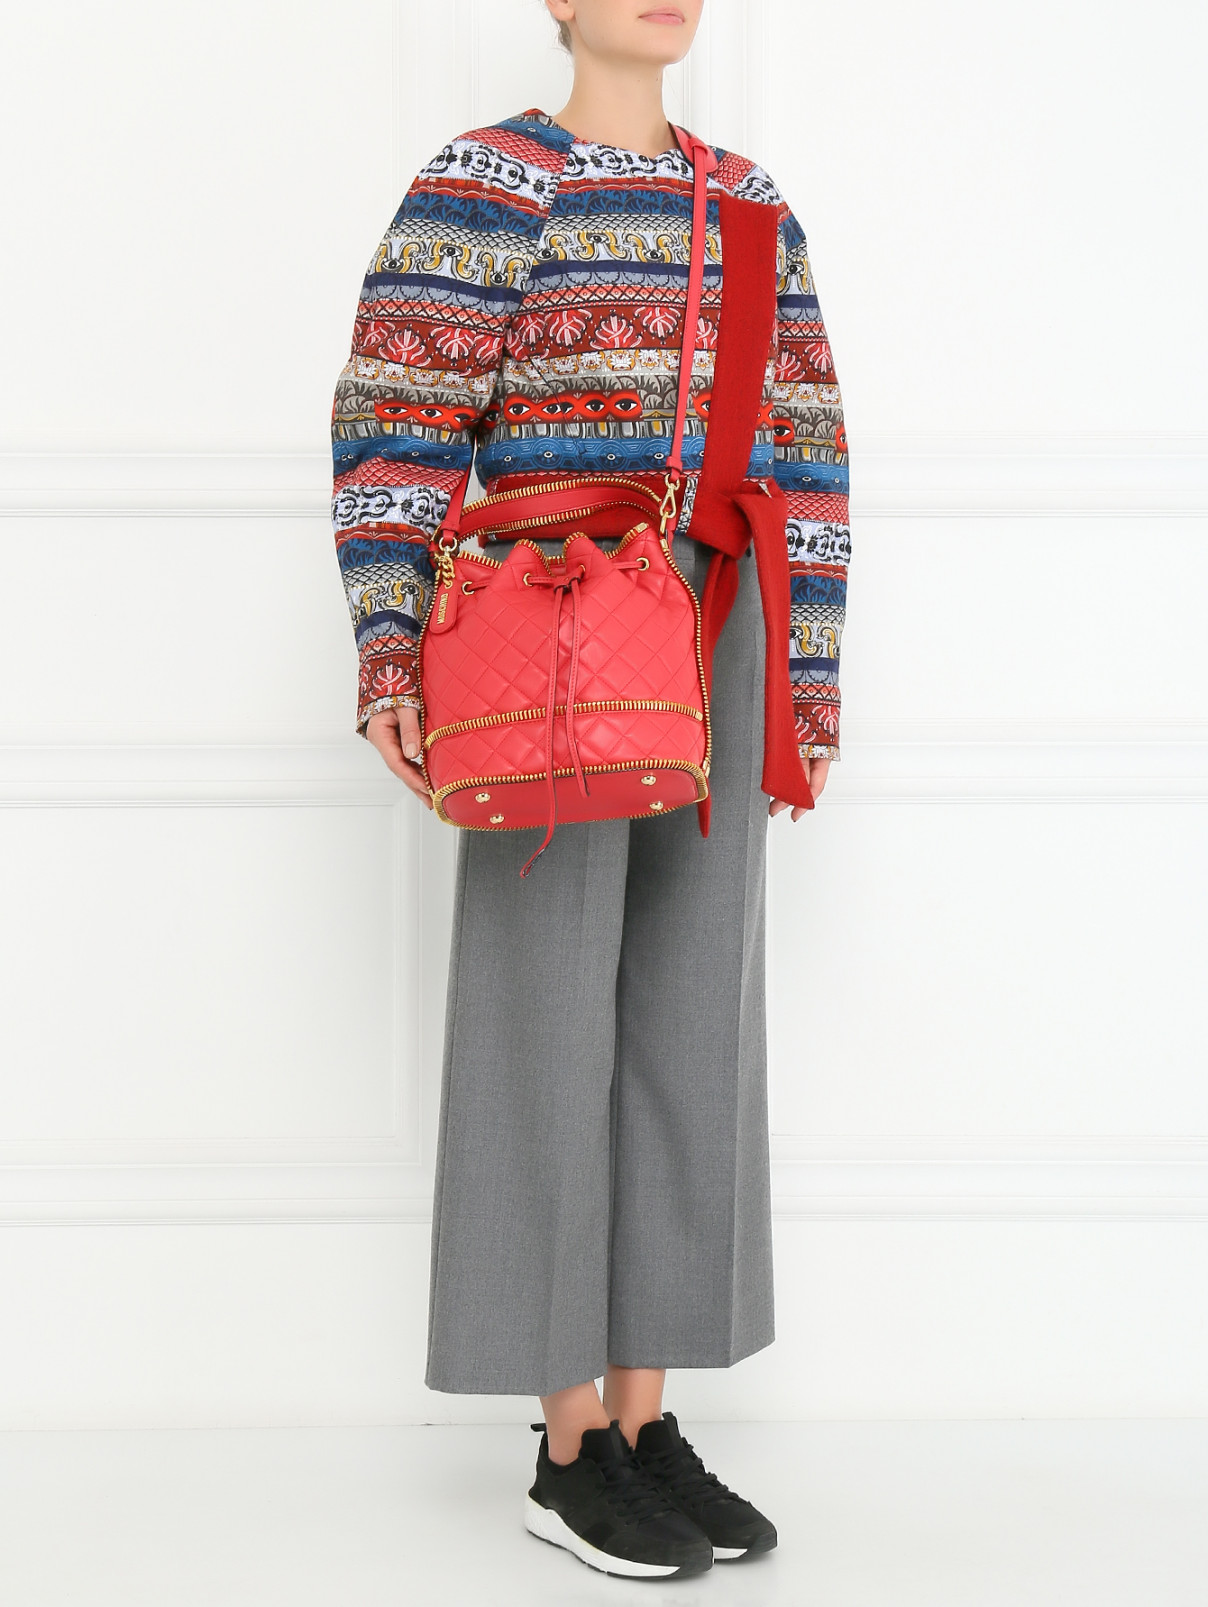 Сумка-мешок с металлической отделкой на  плечевом ремне Moschino Couture  –  Модель Общий вид  – Цвет:  Красный